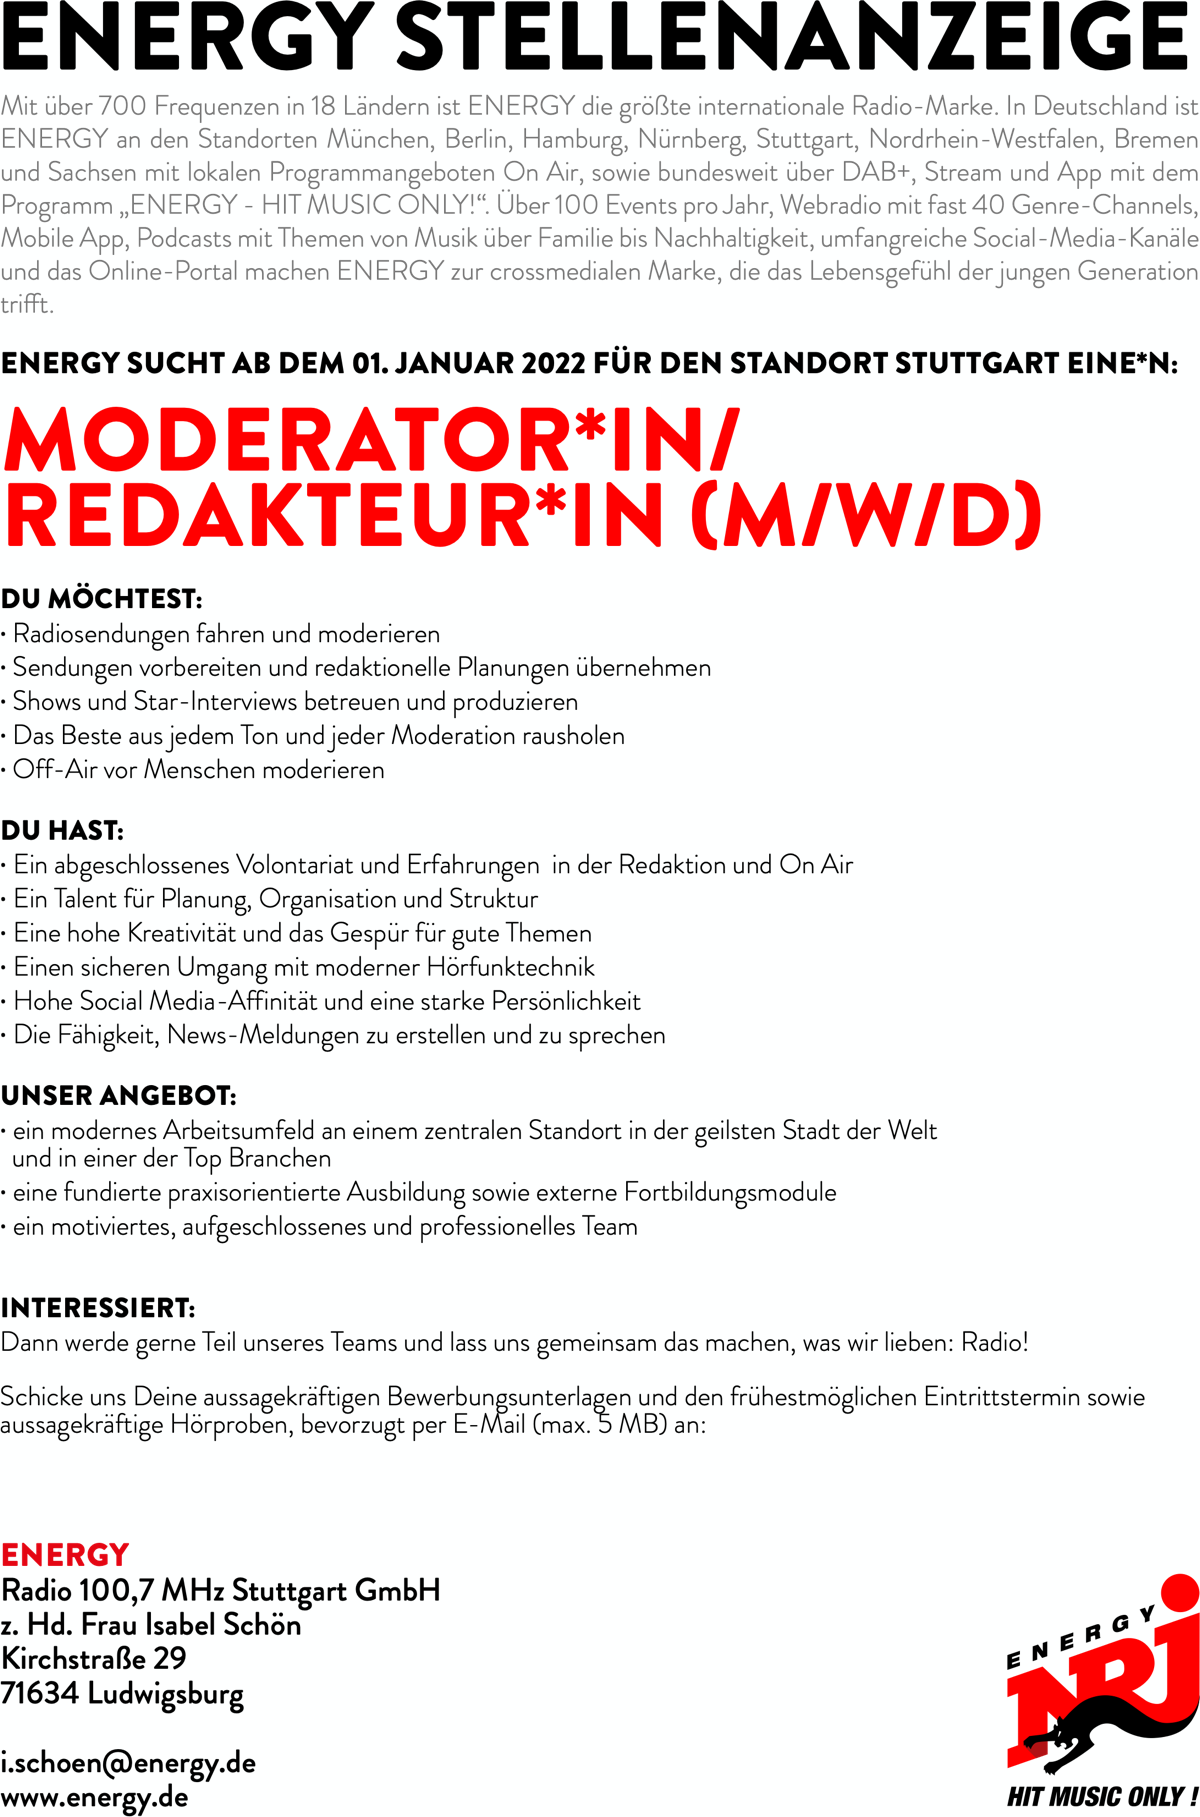 ENERGY Stuttgart sucht Moderator*in/Redakteur*in (m/w/d)